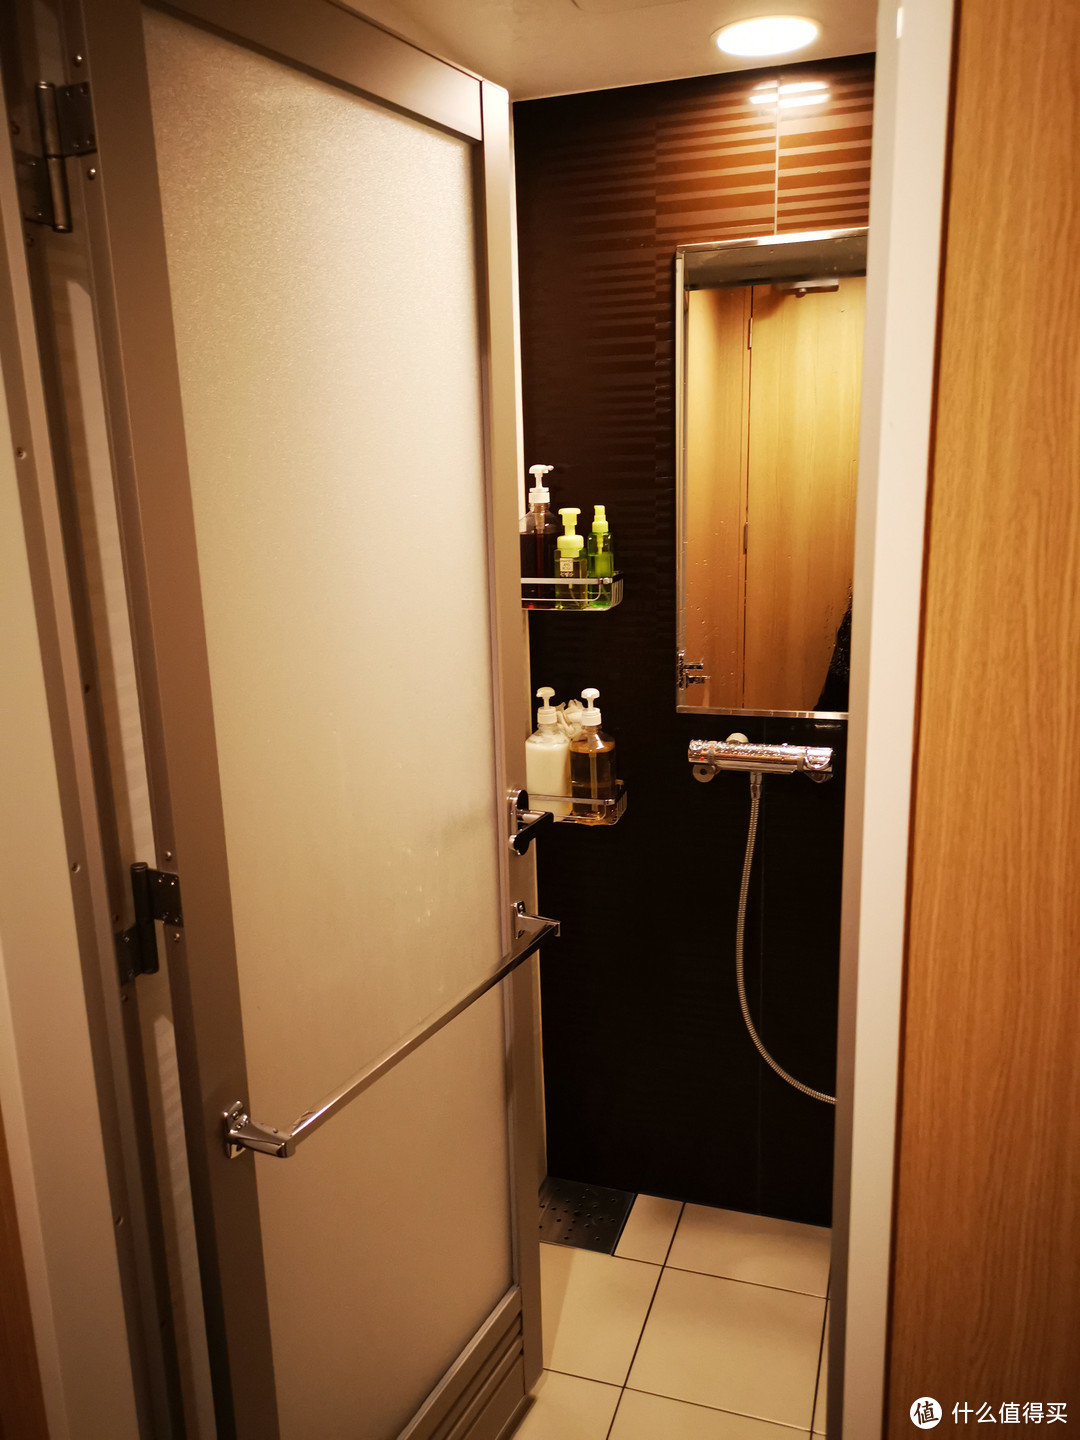 胶囊胶囊胶囊—带你解密日本的女性胶囊旅馆专区